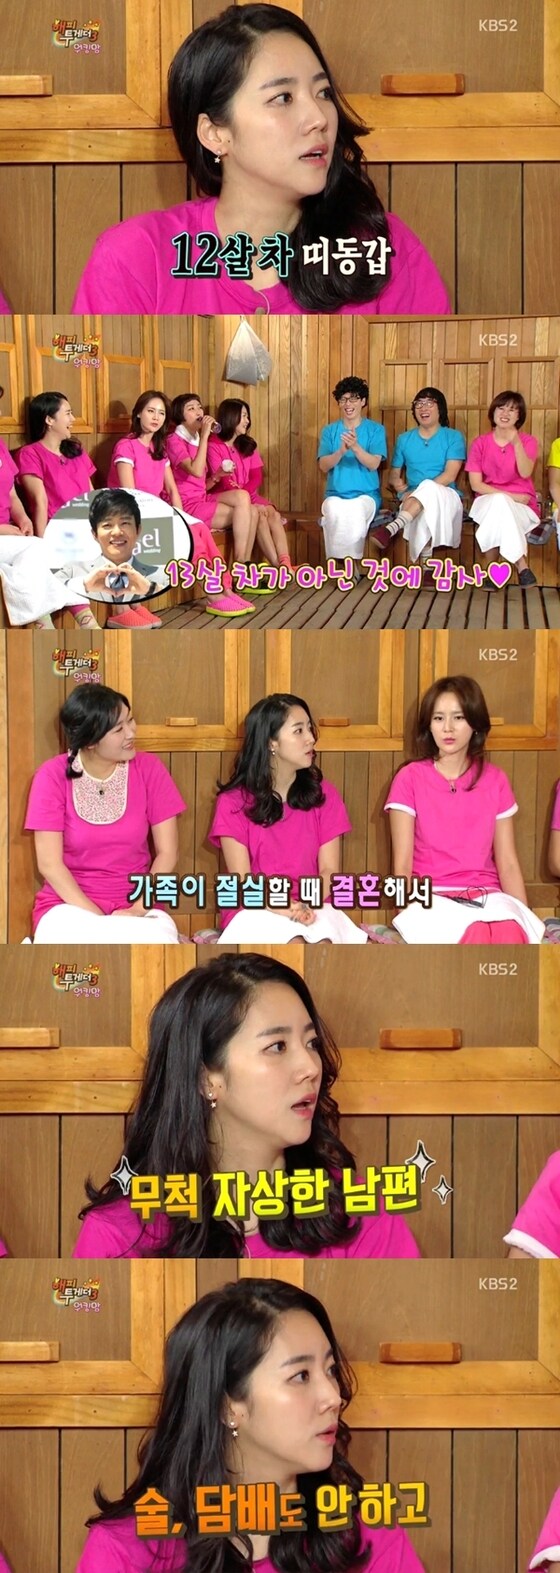 이윤진이 남편 이범수 자랑을 했다. © News1스포츠 / KBS2 ´해피투게더3´ 캡처